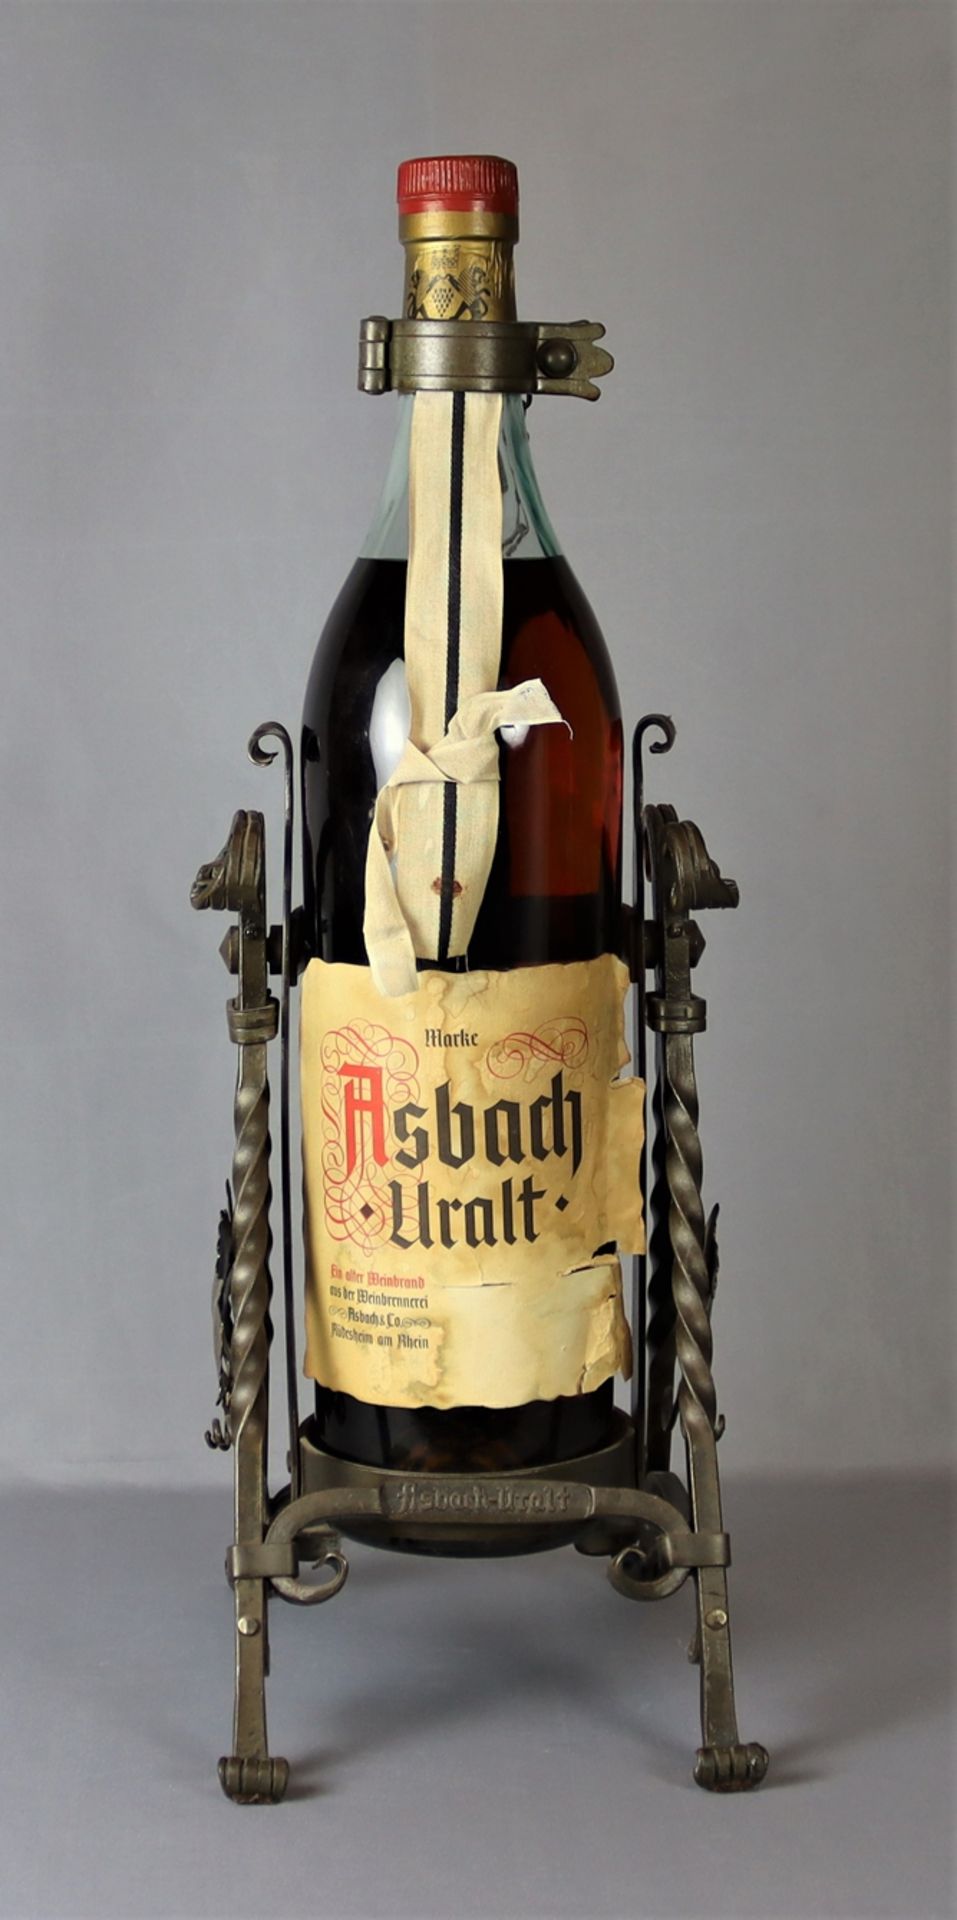 Flasche Weinbrand '"Asbach Uralt", mit Inhalt, ungeöffnet, Wachssiegel nicht gebrochen, aus Eisen g - Bild 2 aus 2